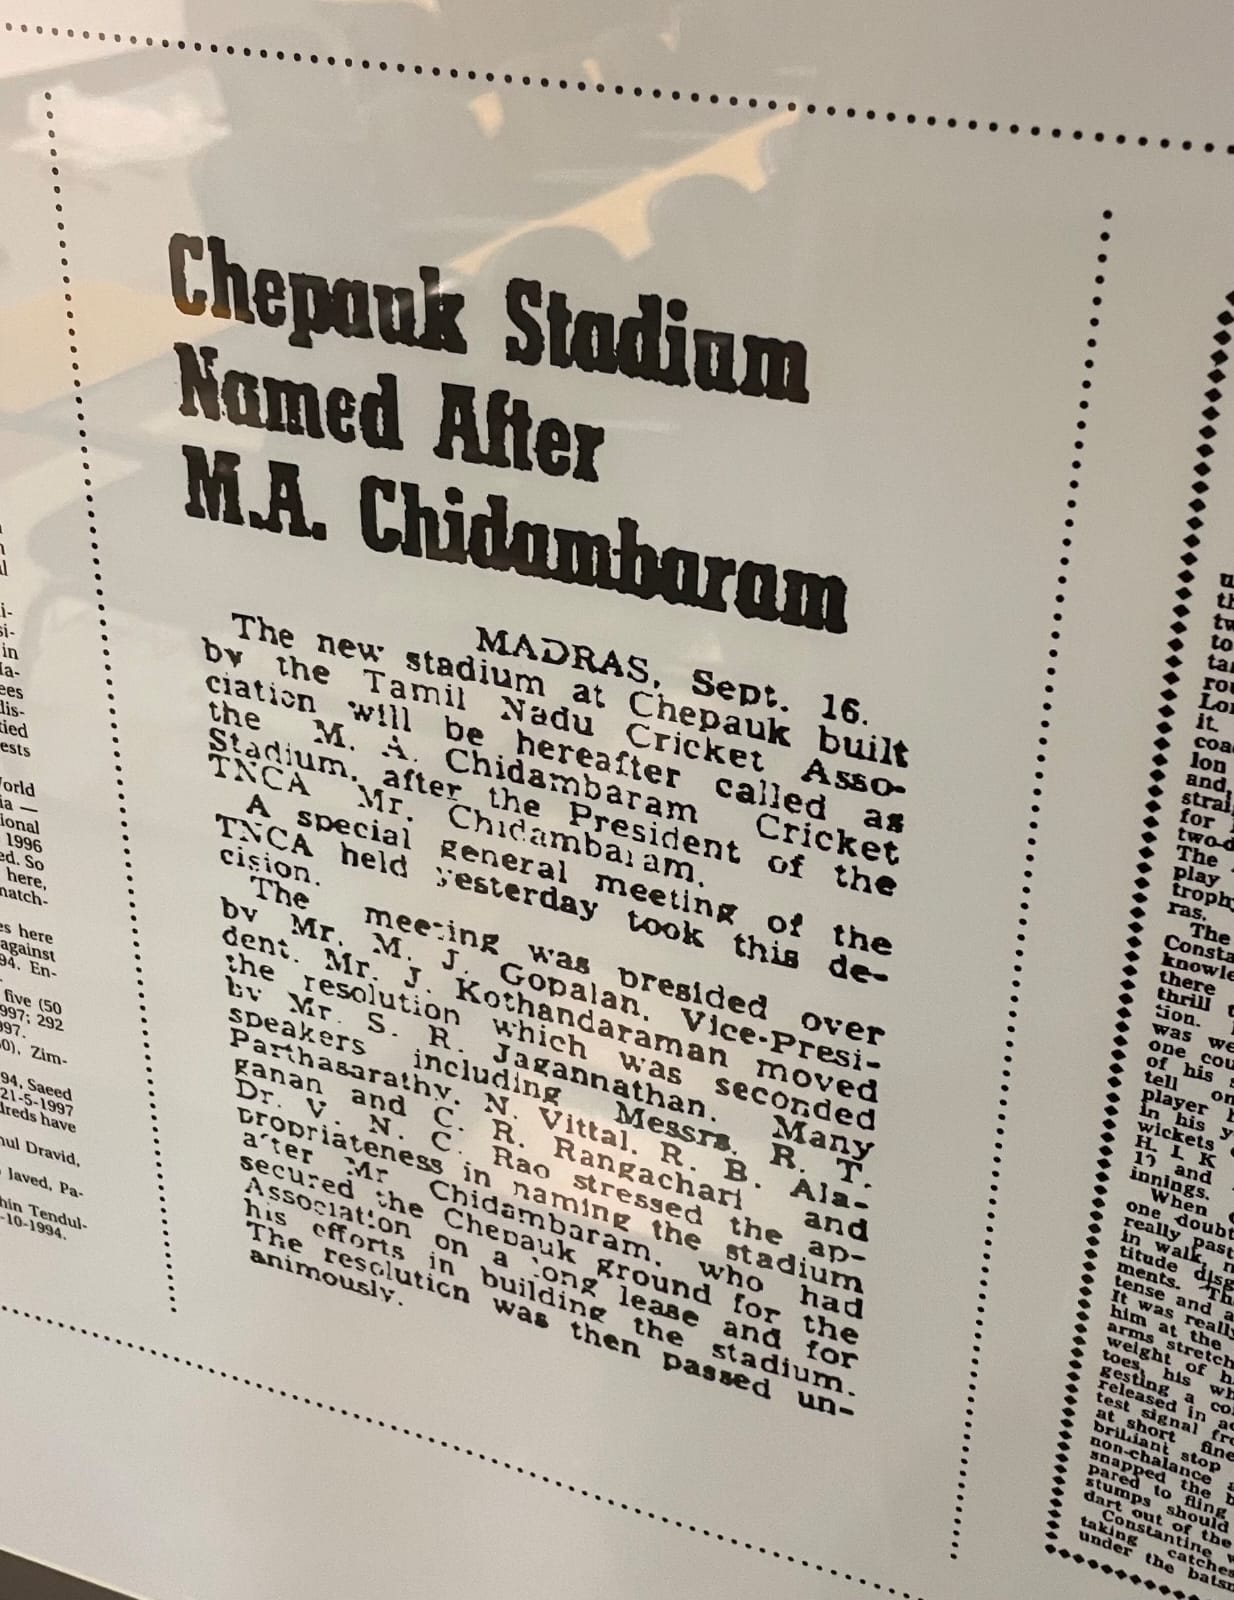 Chennai MA Chidambaram Stadium Stand Named as Karunanidhi Stand